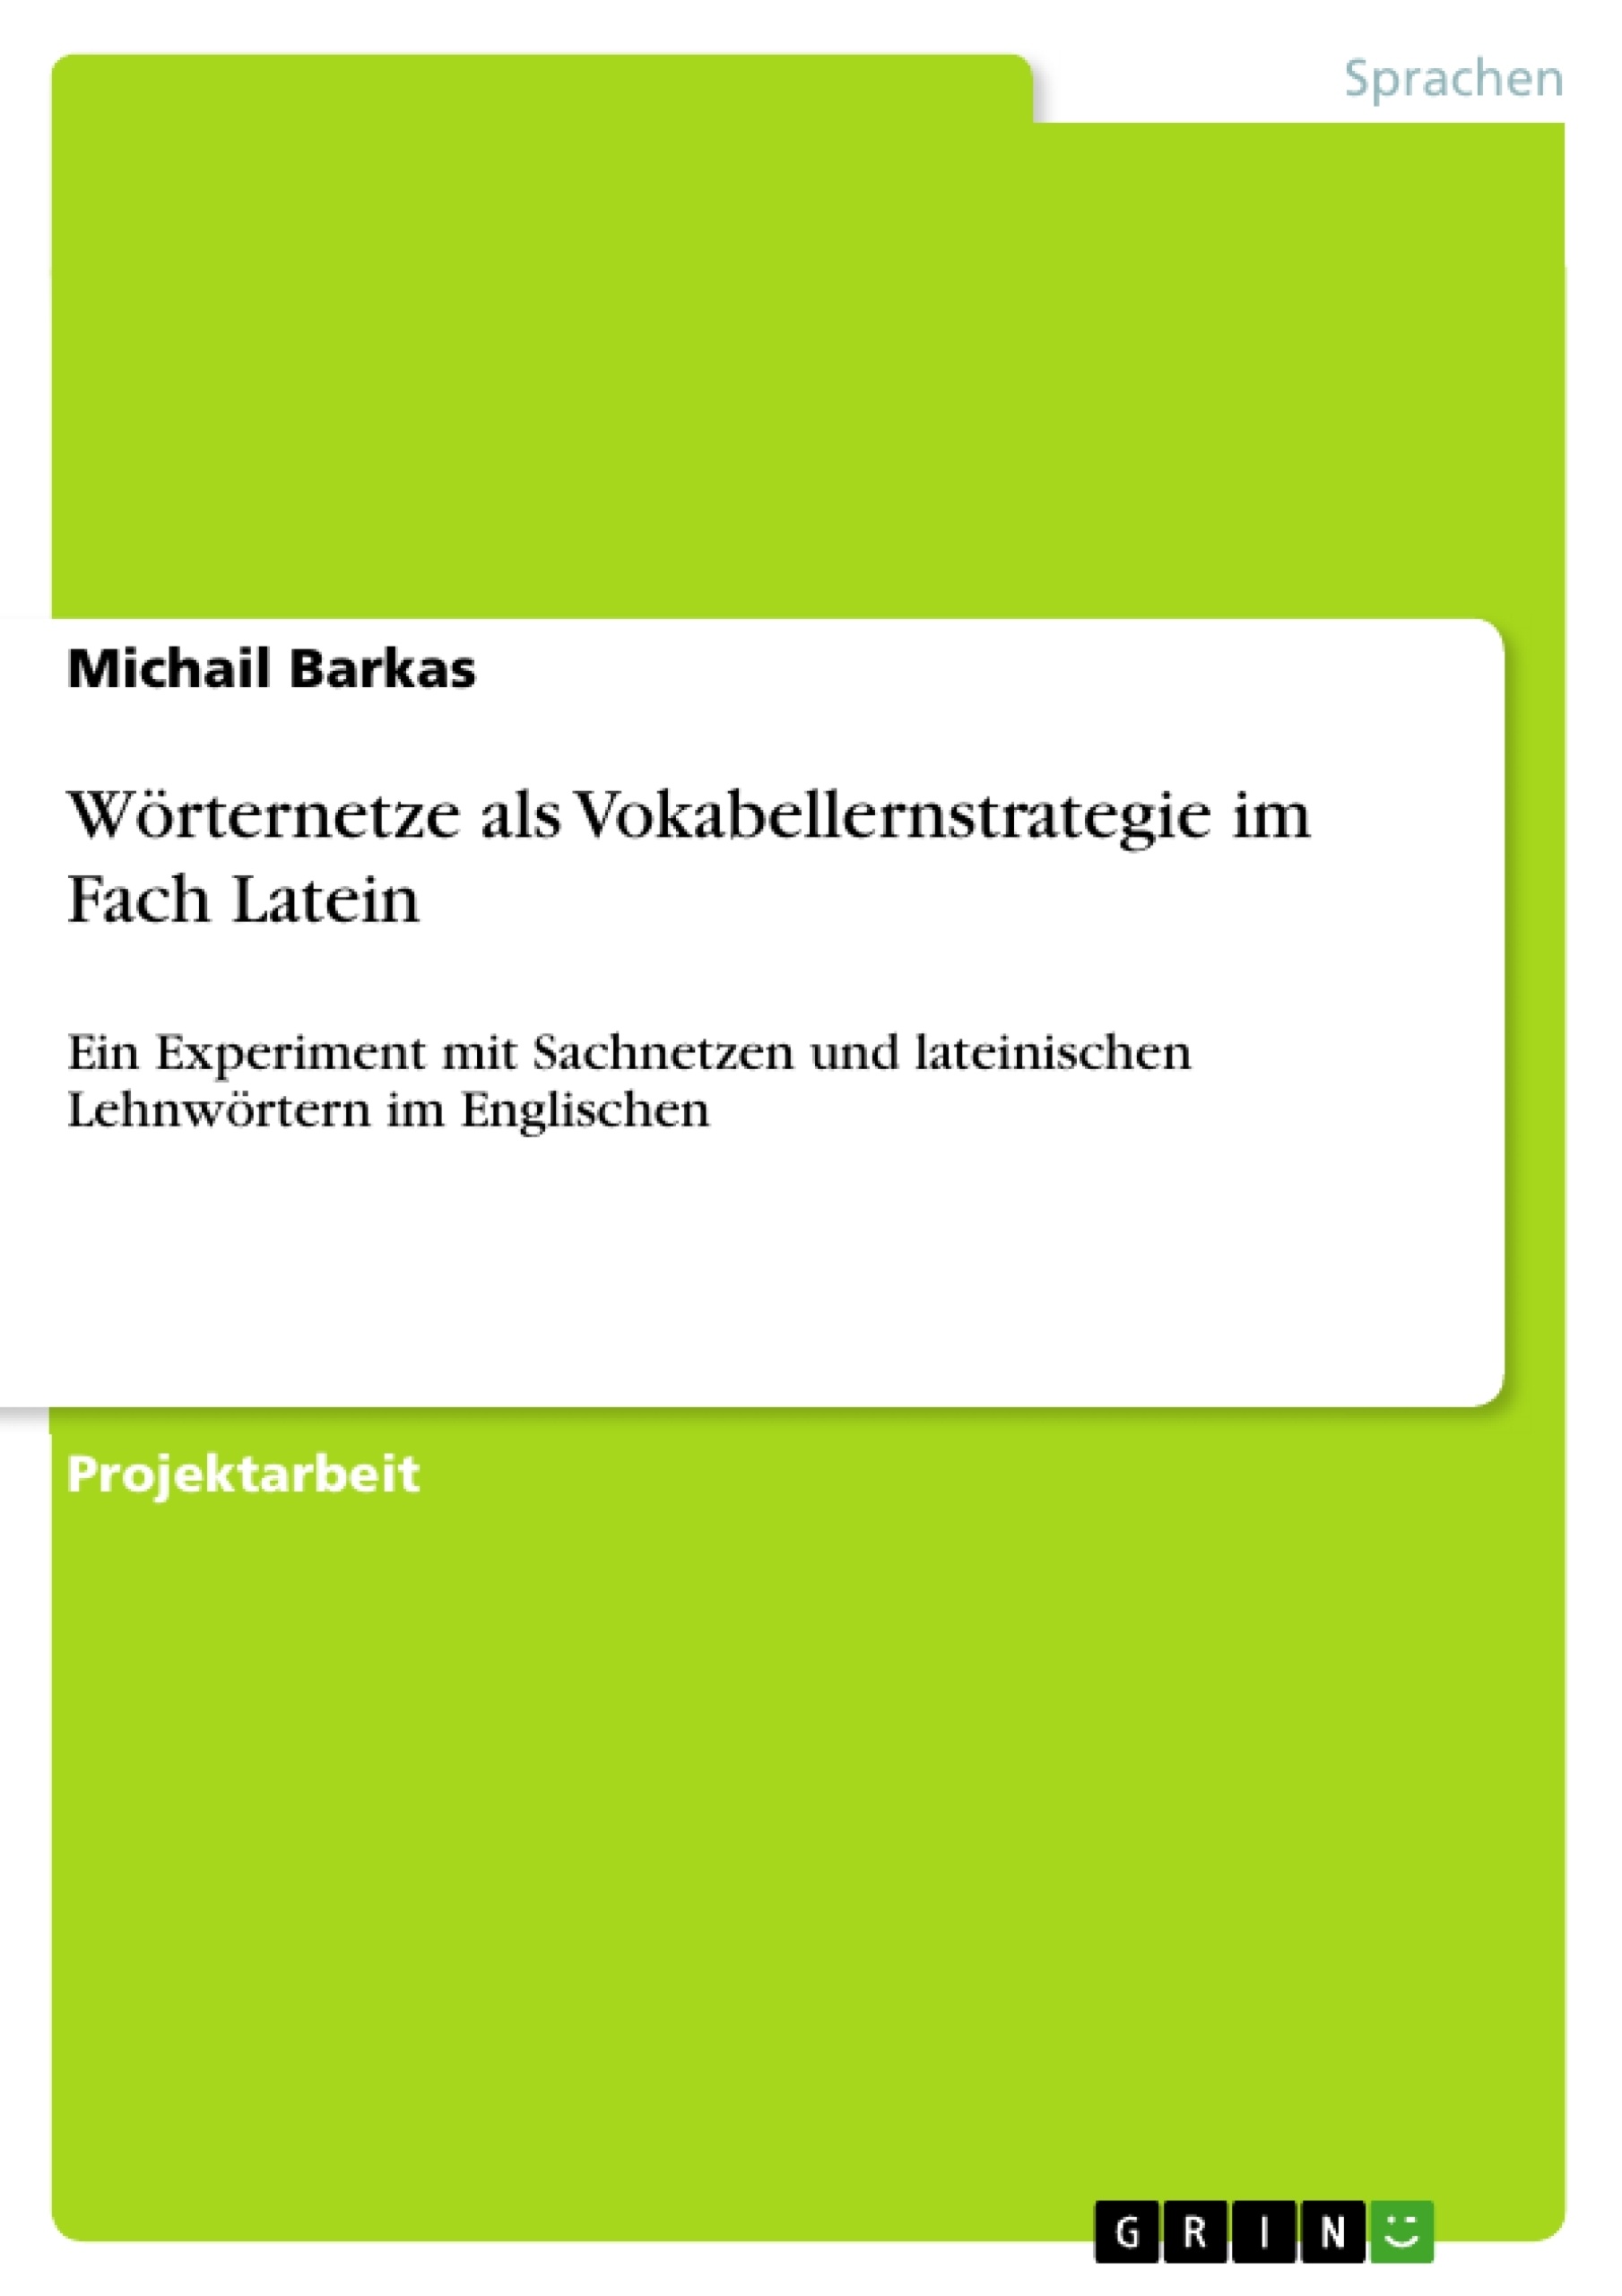 Título: Wörternetze als Vokabellernstrategie im Fach Latein